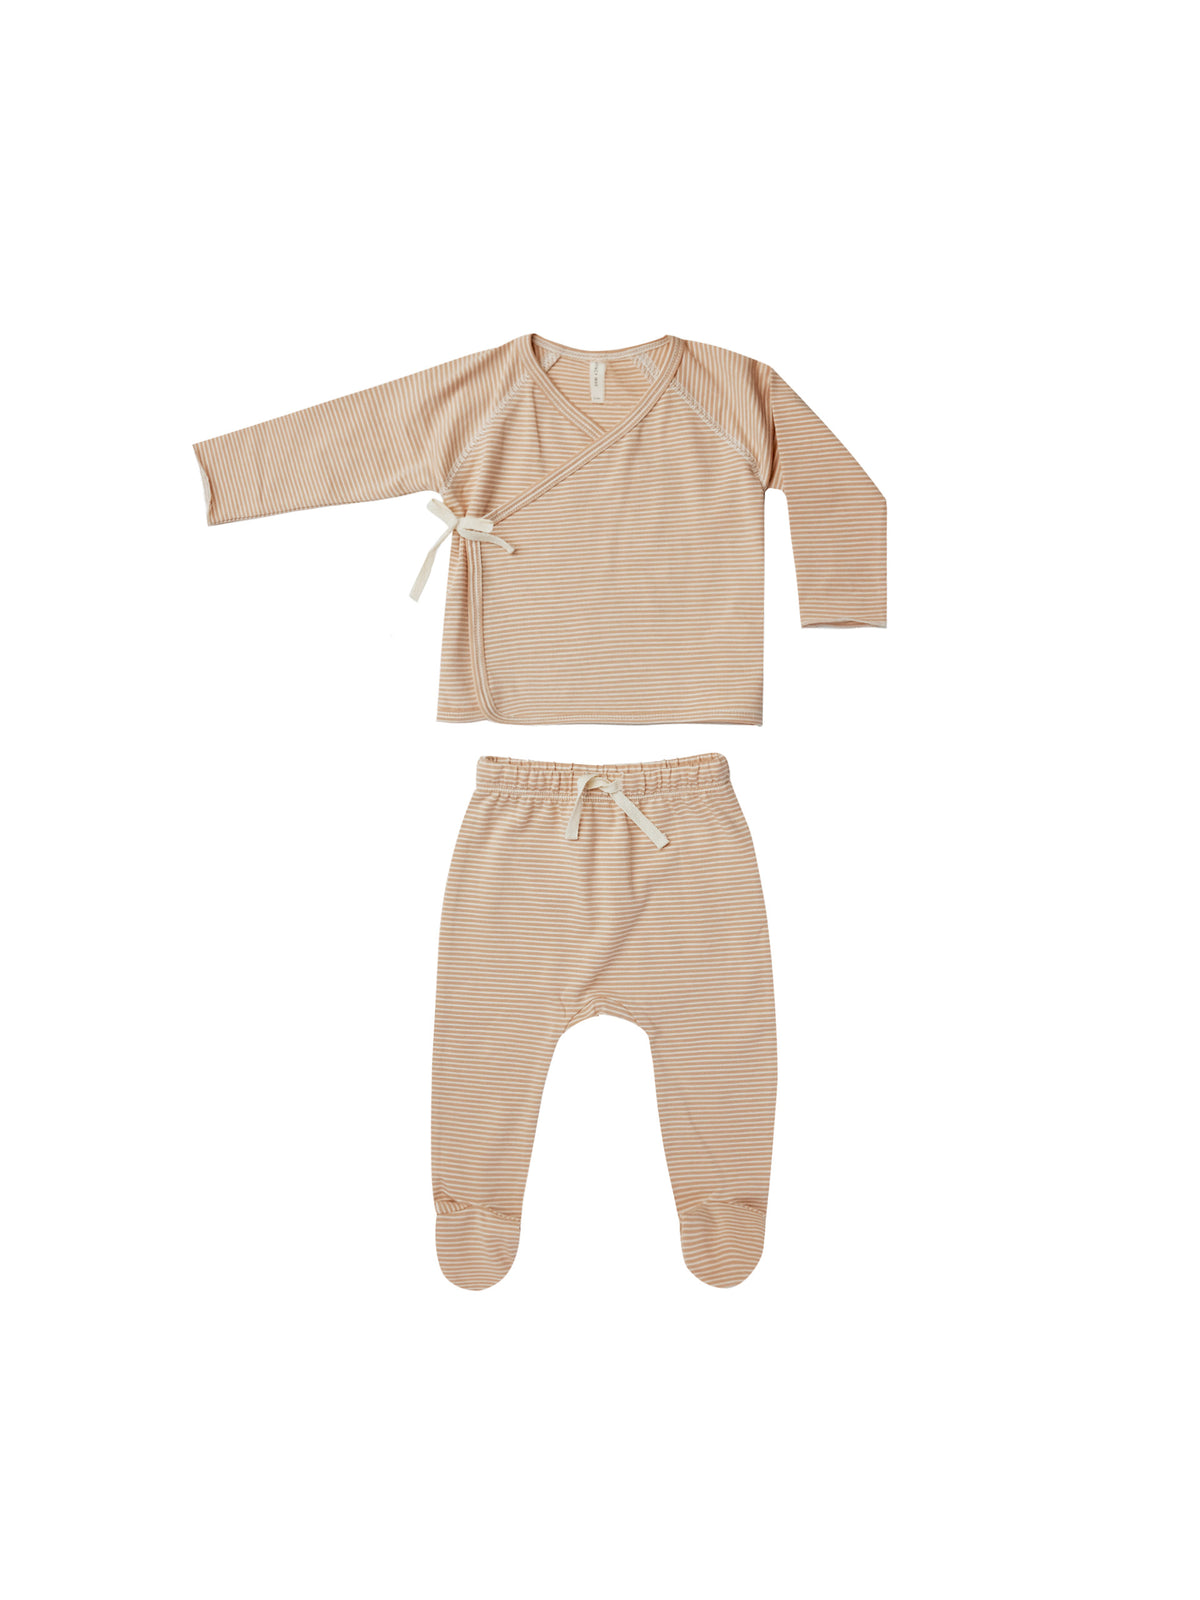 Wrap Top & Pant Set - Apricot Stripe - Child Boutique